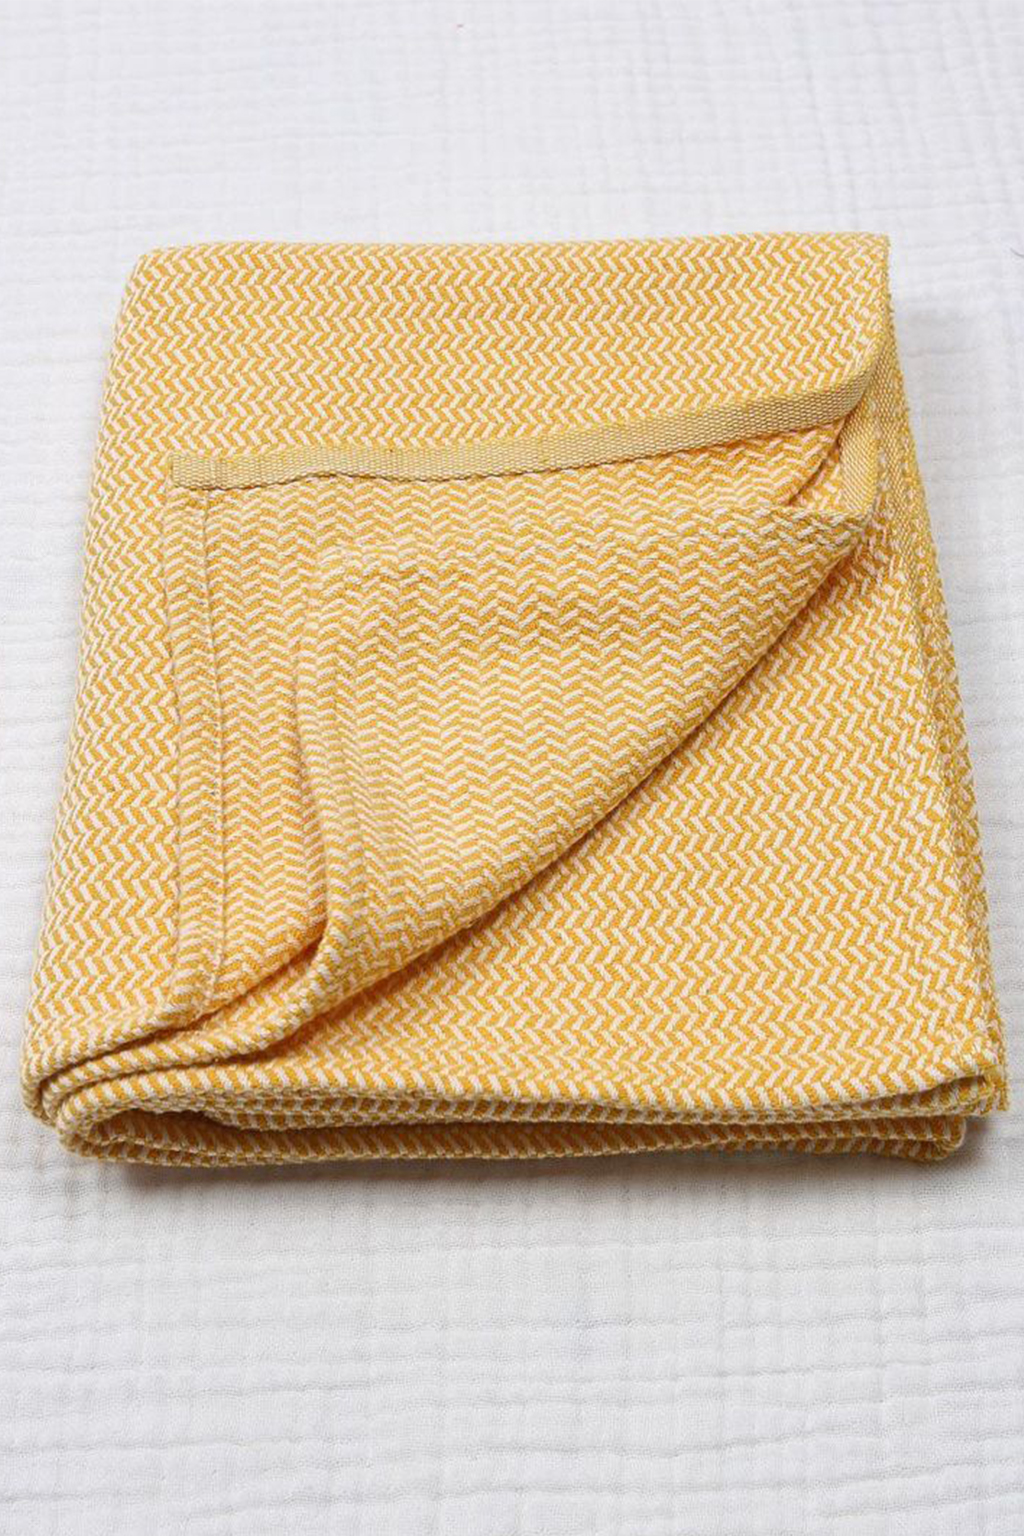 Dětská hřejivá hrubá deka, hořčicově žlutá, 93 x 100 cm